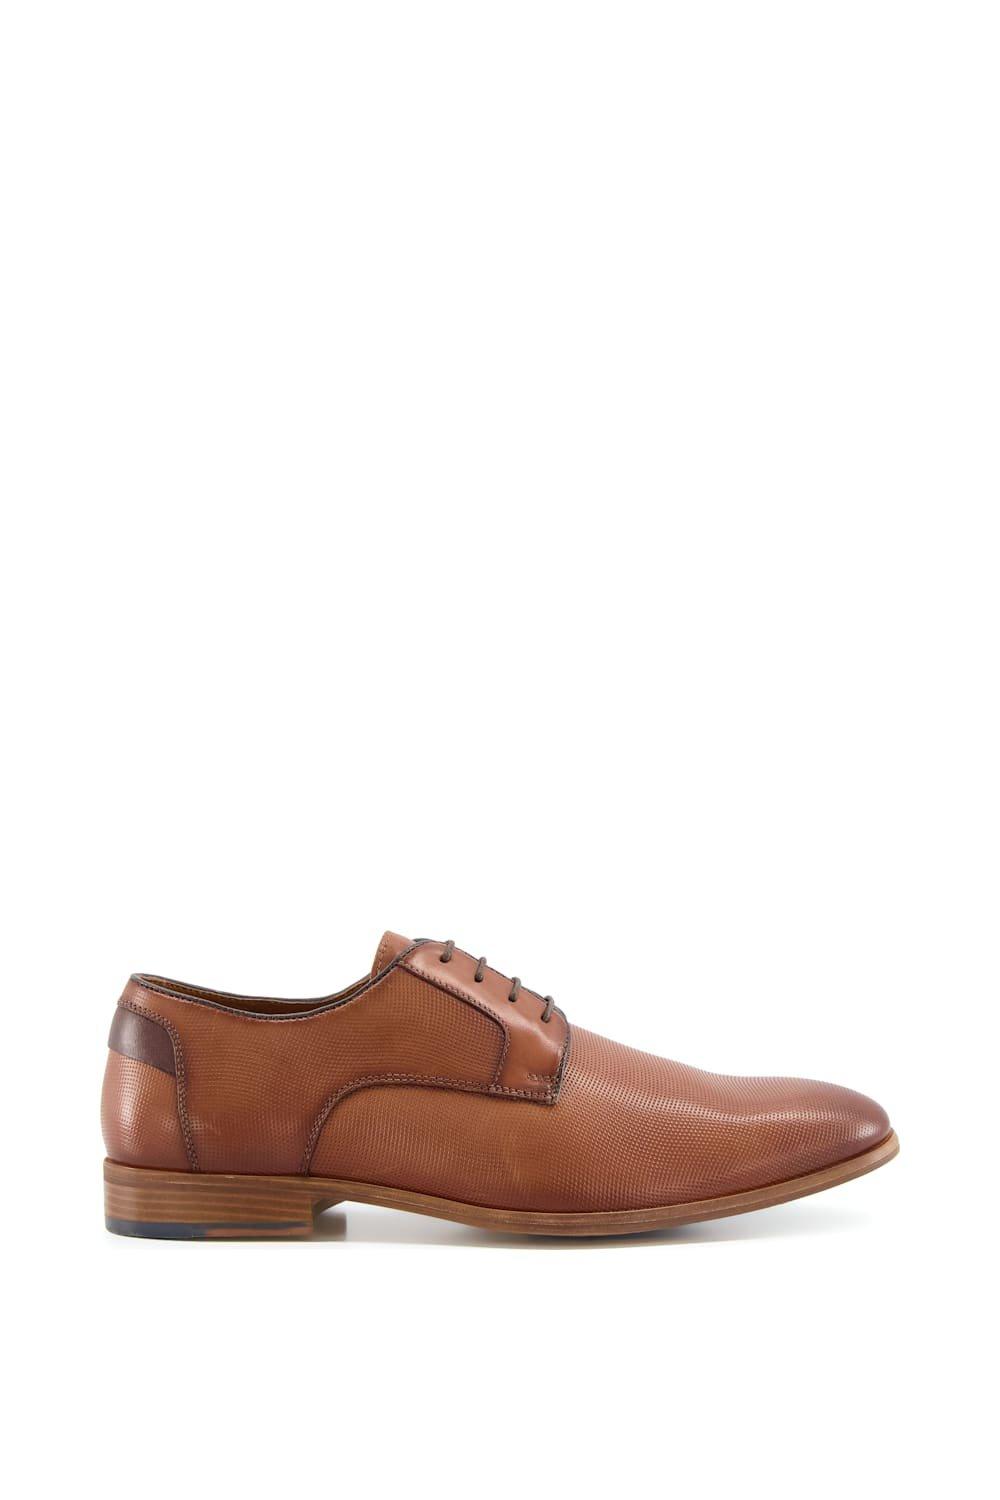 Кожаная повседневная обувь Бильярд Dune London, коричневый кроссовки kinetix gibson black